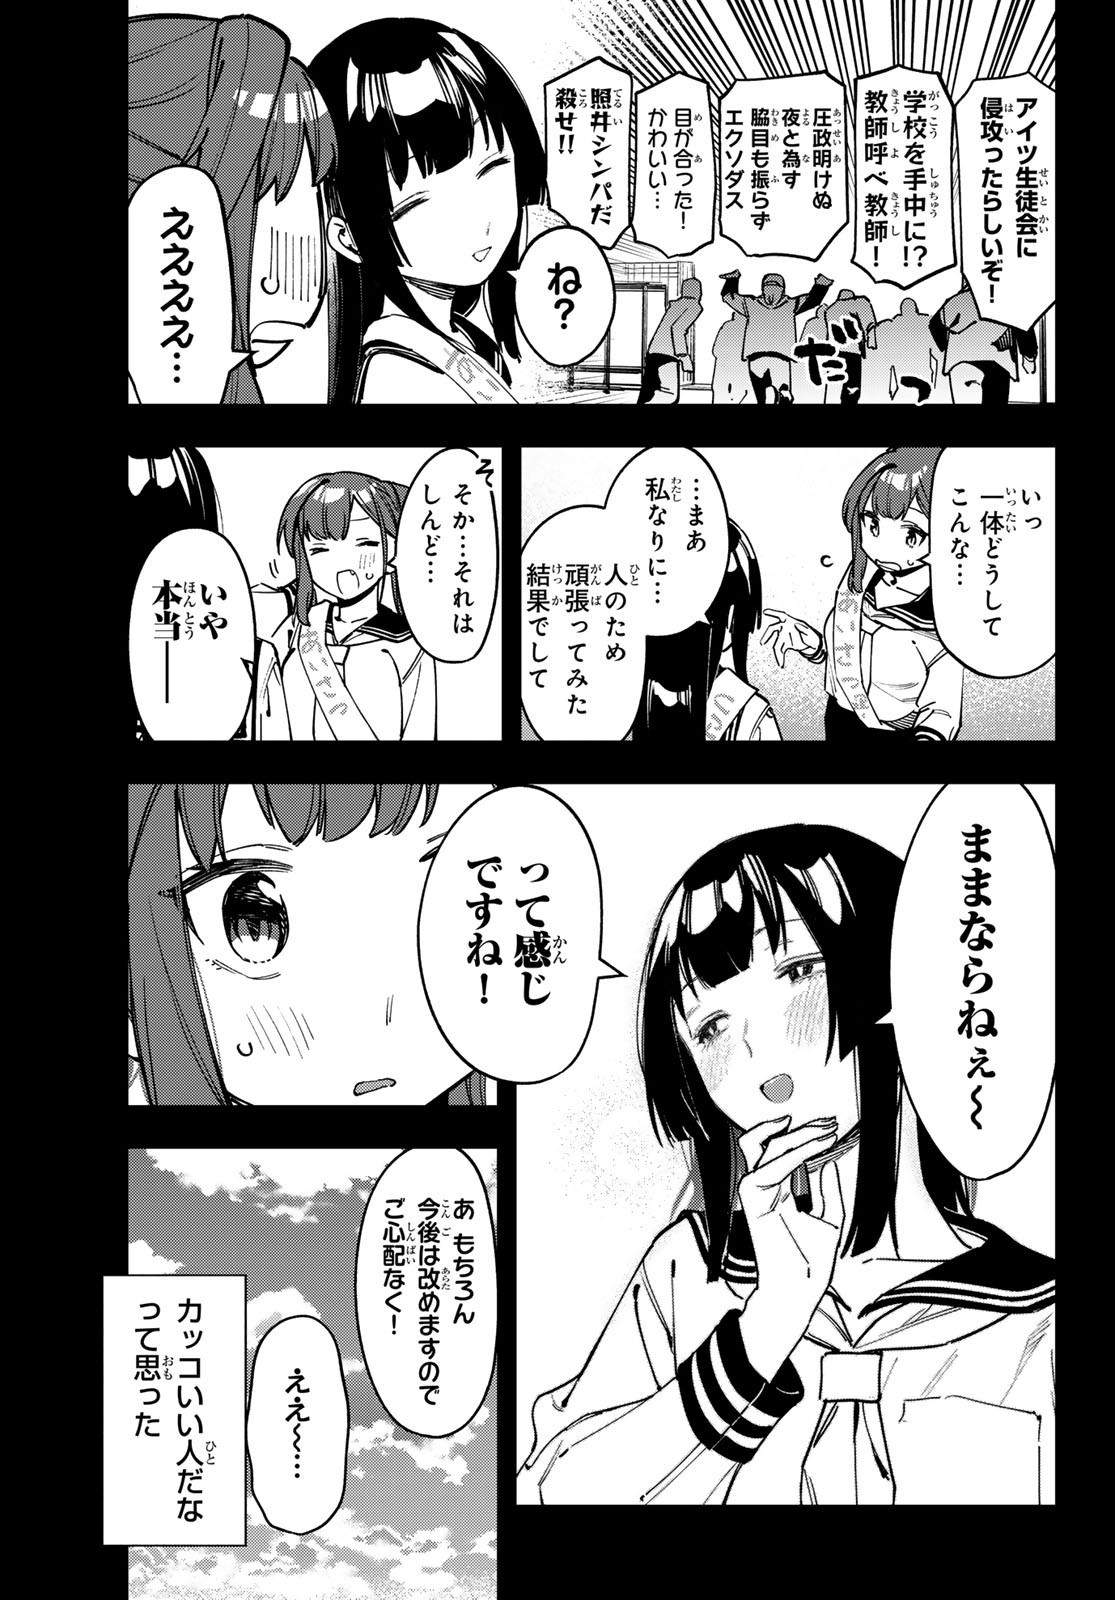 Seitokai ni mo Ana wa Aru! - Chapter 070 - Page 3